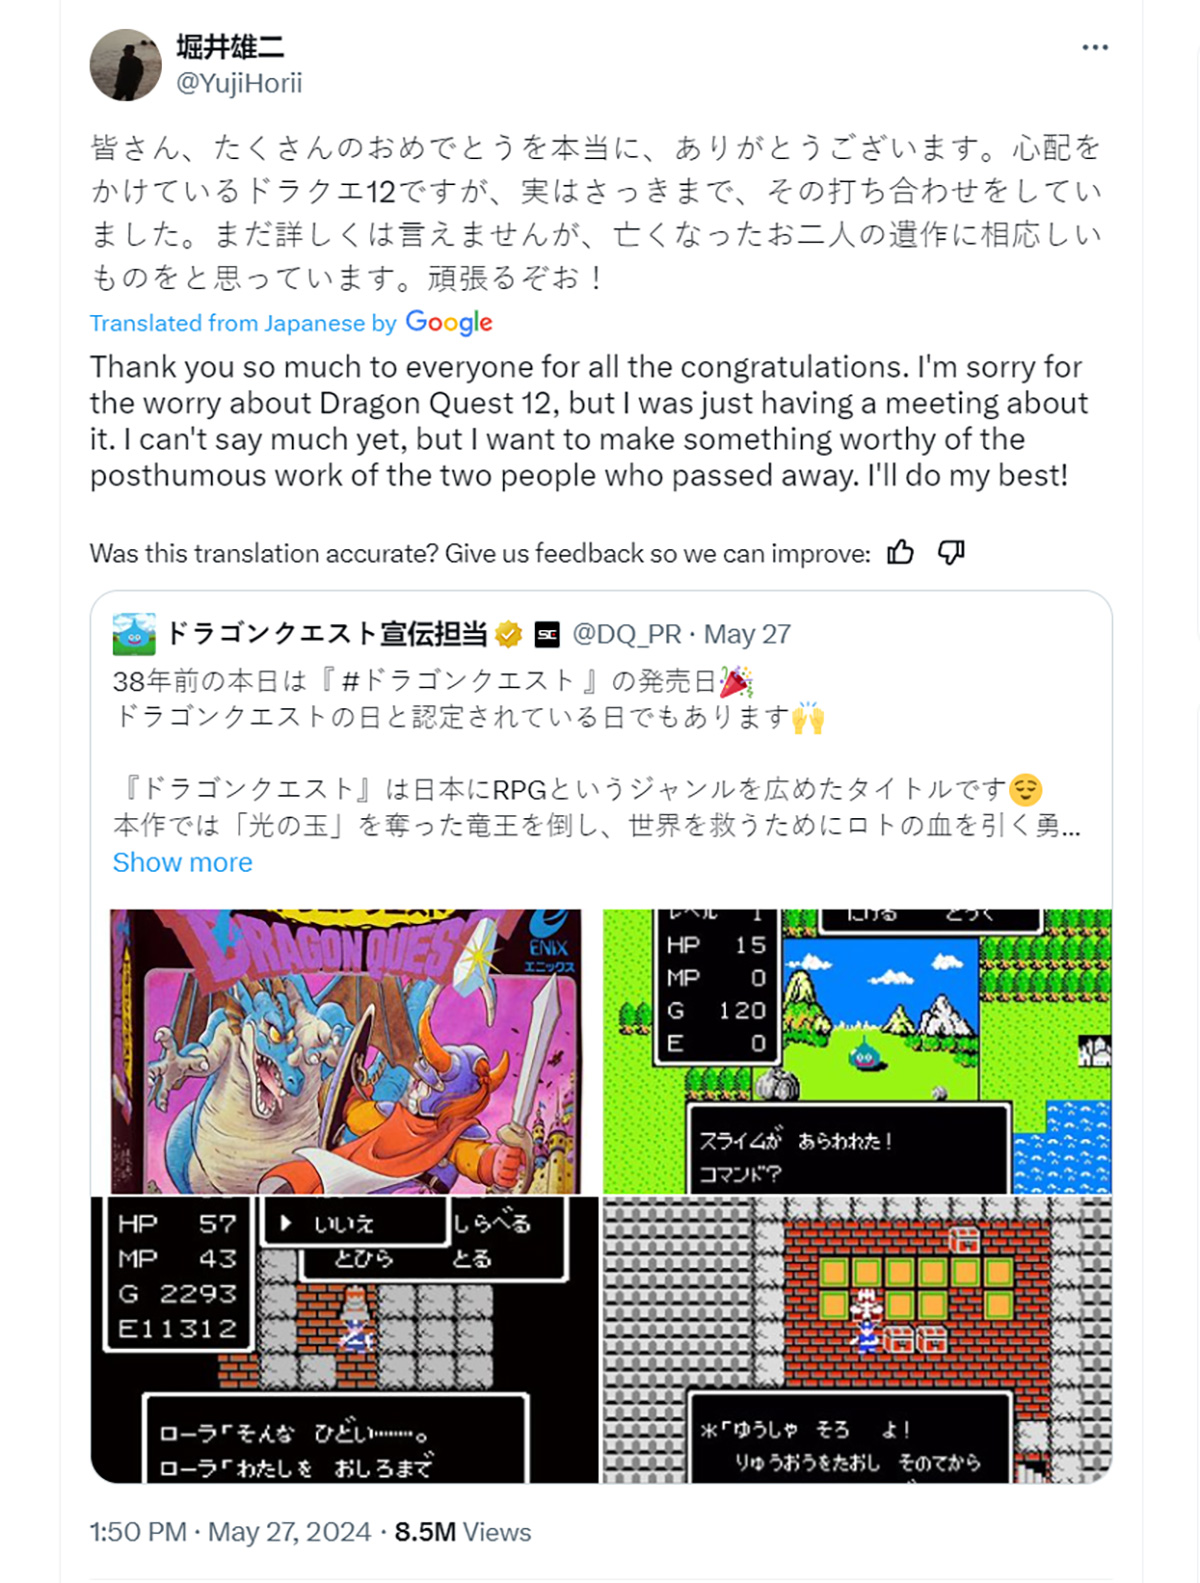 Cha đẻ series hy vọng Dragon Quest 12 xứng đáng tri ân 2 nhà phát triển đã qua đời